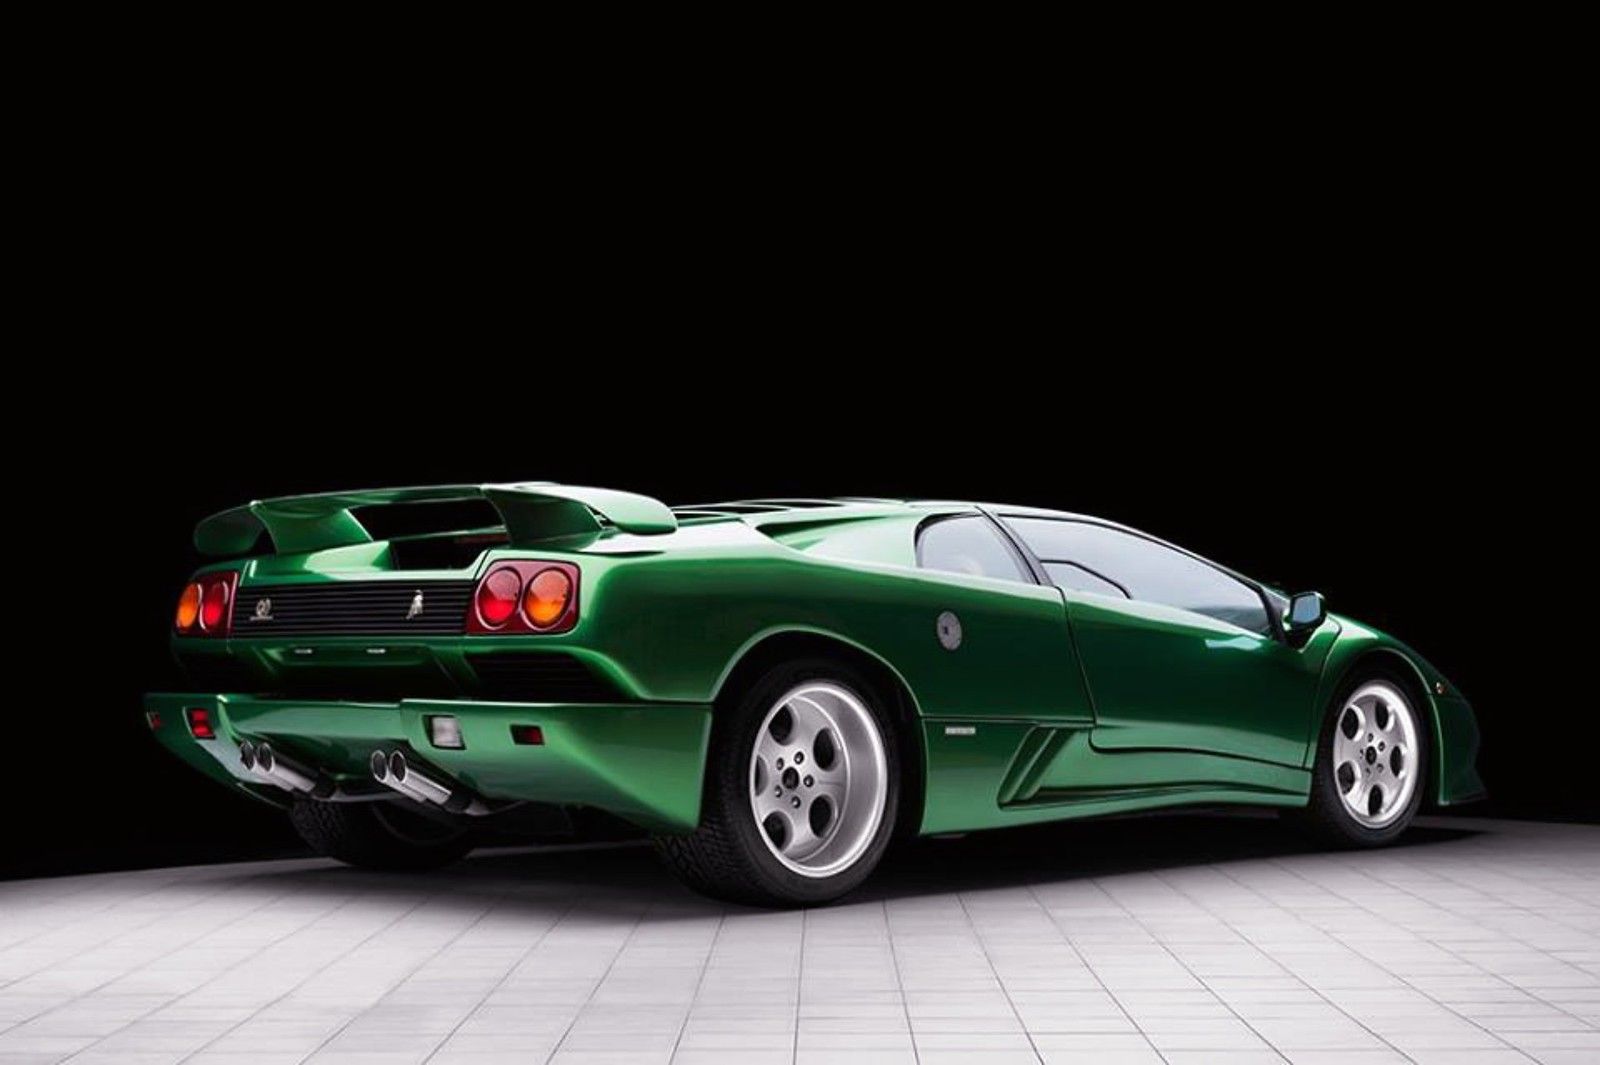 Green Metallic Lamborghini Diablo in showroom